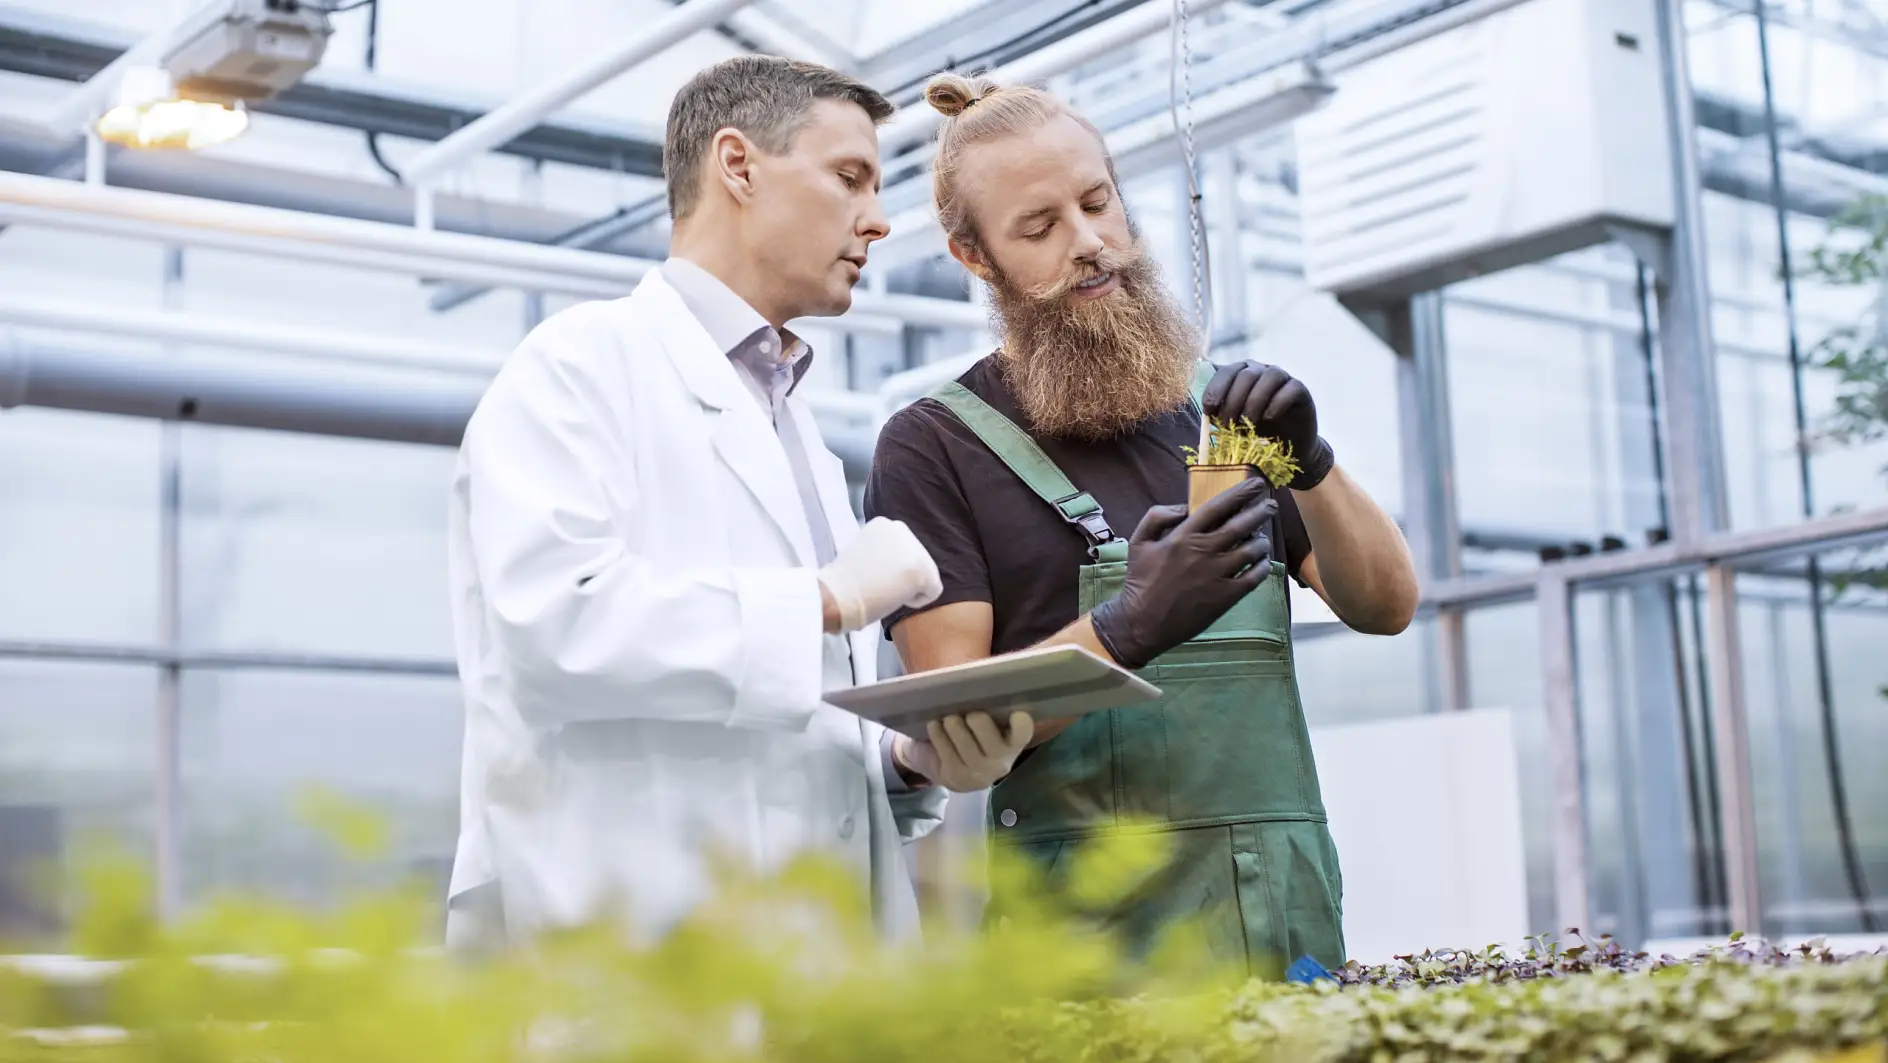 Un scientifique et un ouvrier agricole inspectent des semis pour détecter des maladies dans une serre.